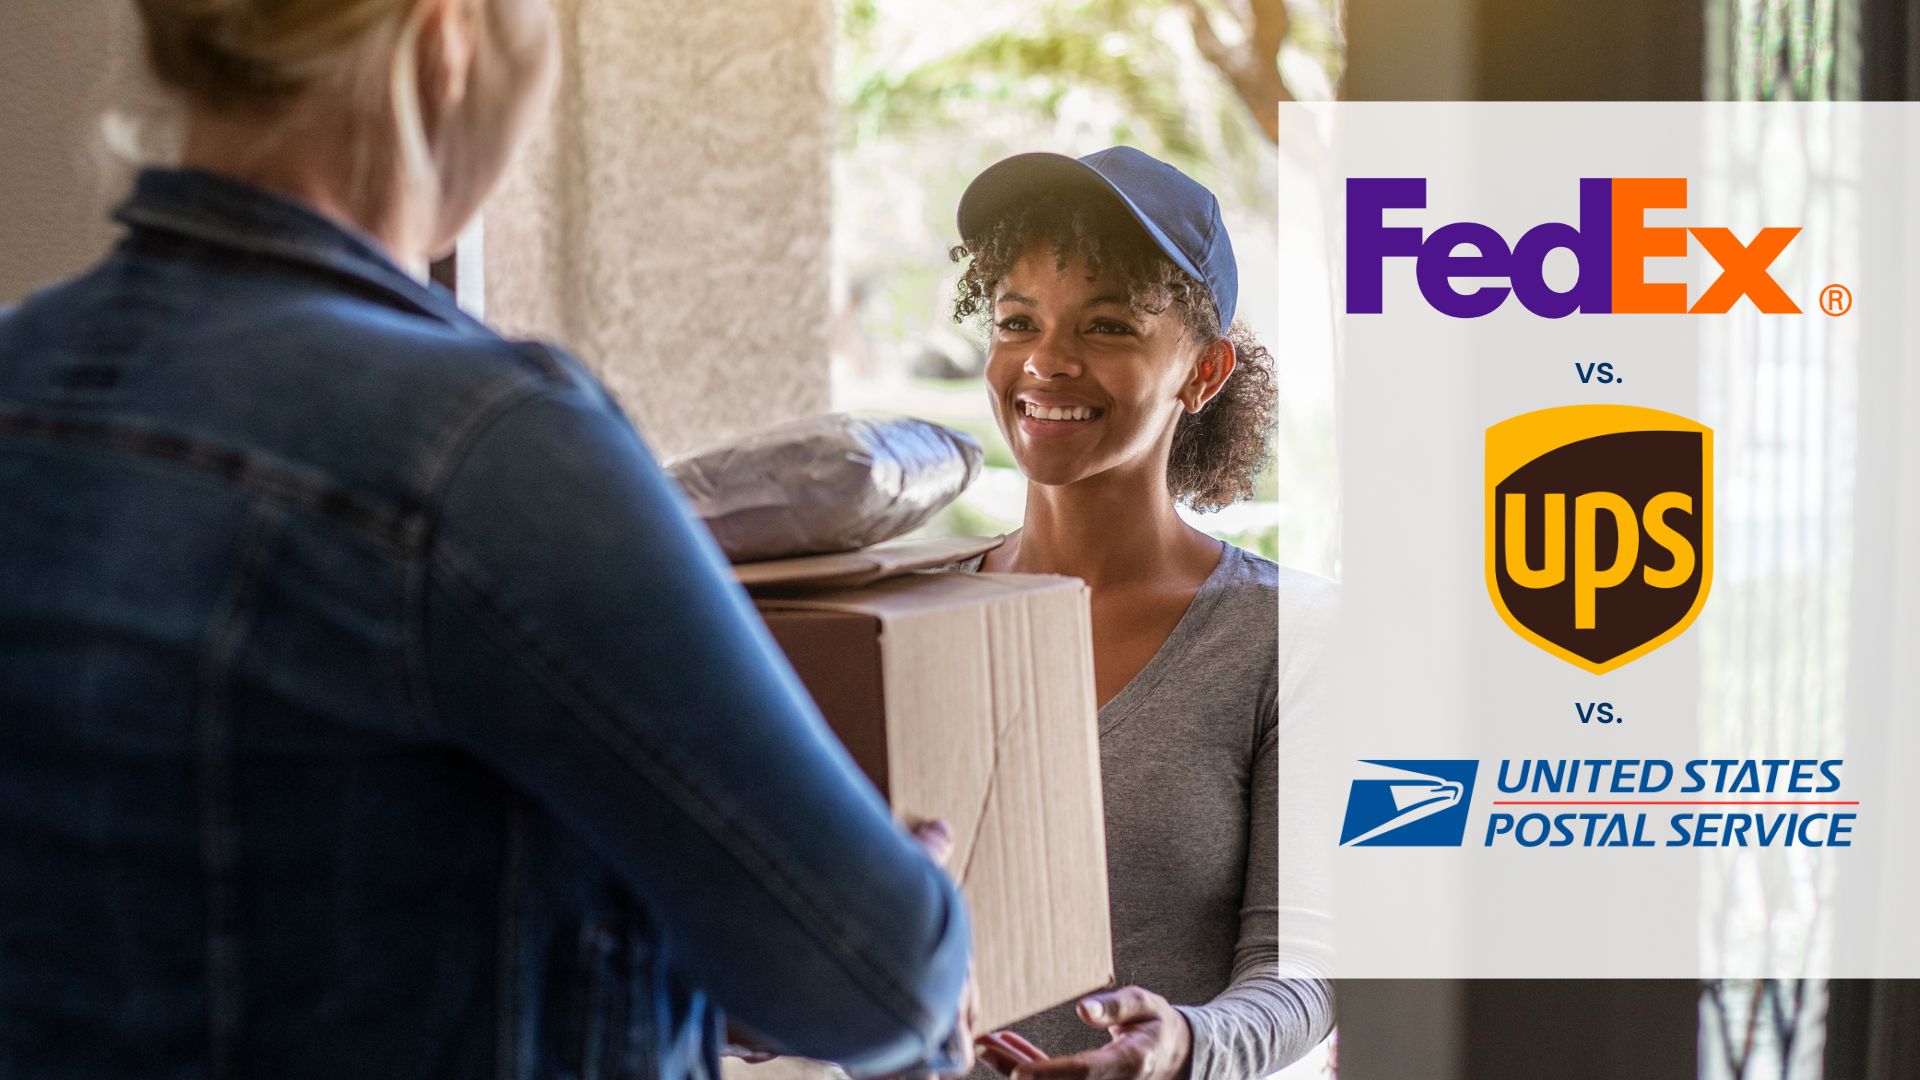 FedEx vs UPS vs USPS: Compare Delivery Times | BR Printers